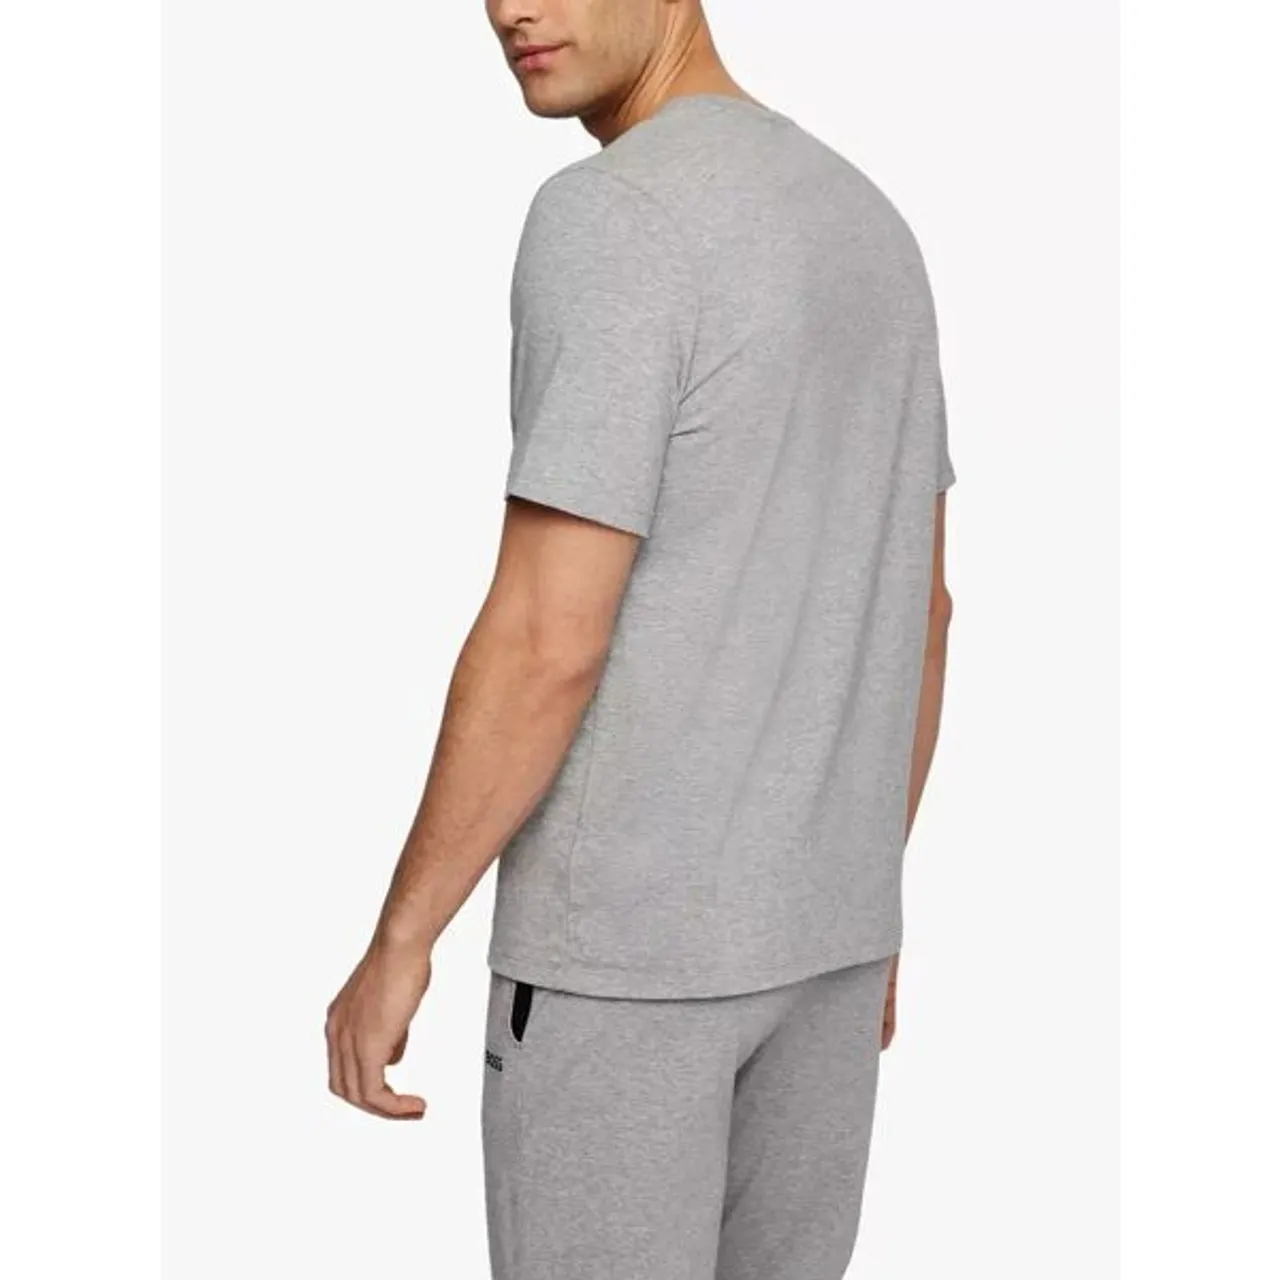 Hugo Boss BOSS Cotton Blend Lounge T-Shirt - Medium Grey - Male